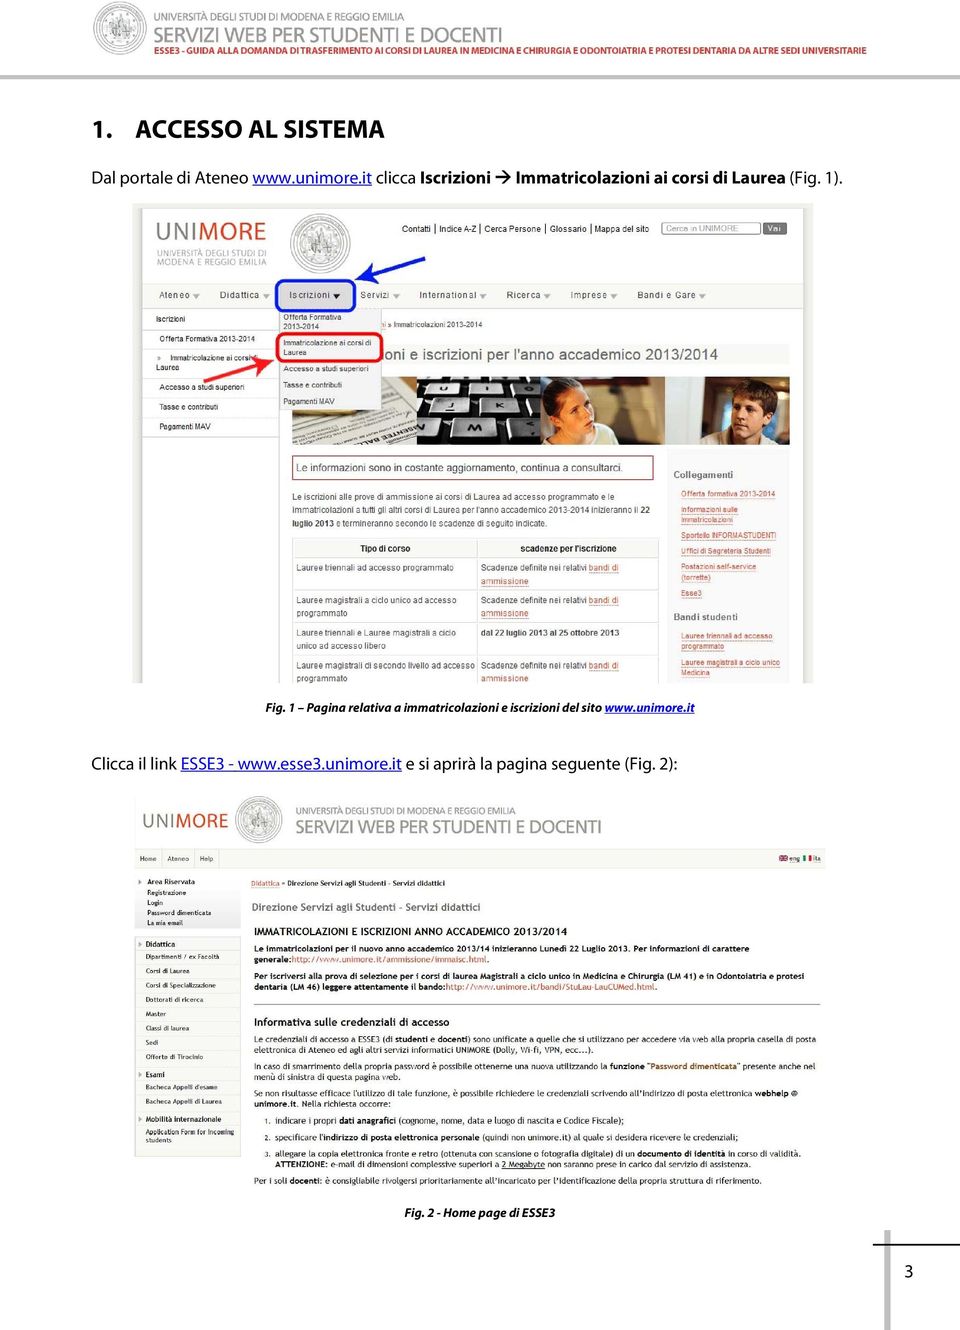 1 Pagina relativa a immatricolazioni e iscrizioni del sito www.unimore.